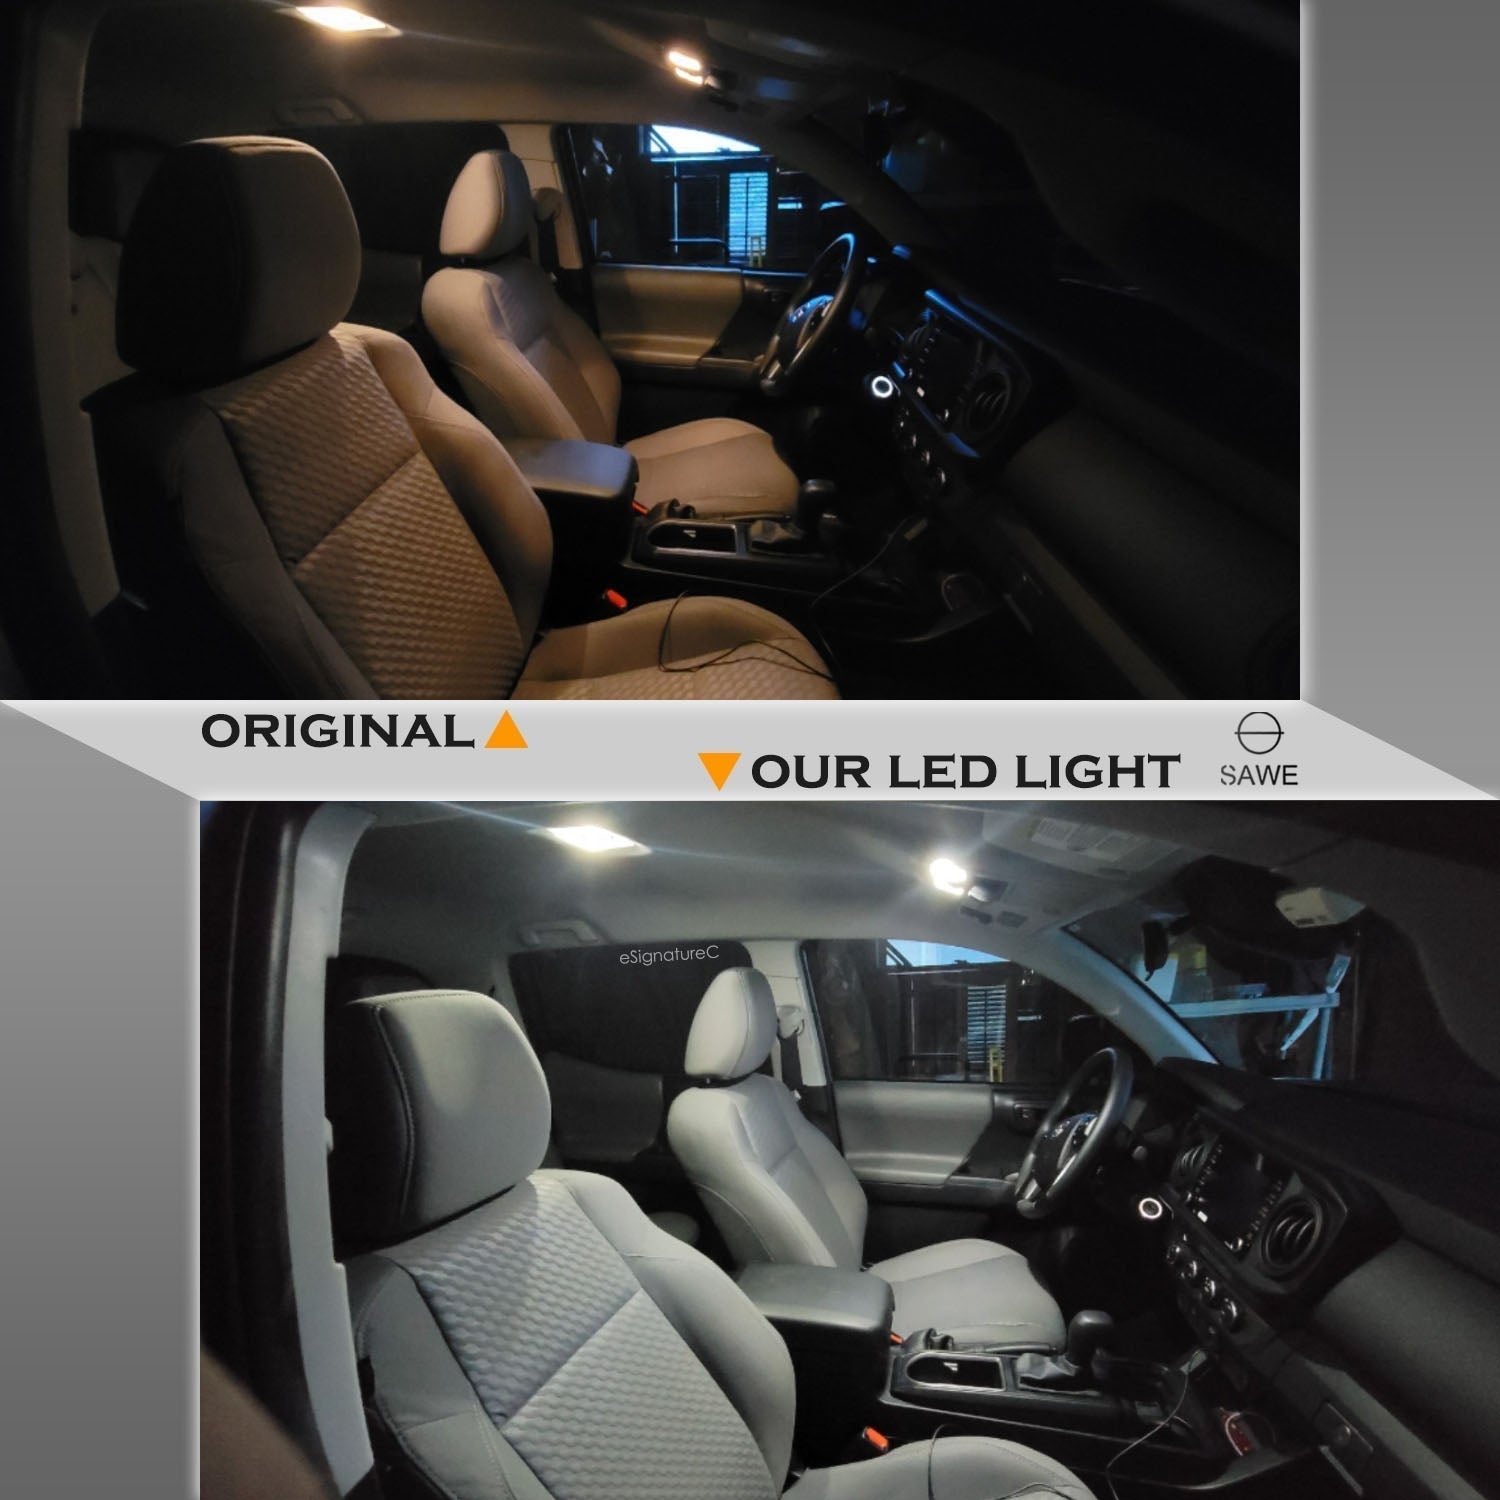 For Ford Explorer Interior LED Lights - Dome & Map Light Bulbs Package Kit for 2002 - 2005 - White